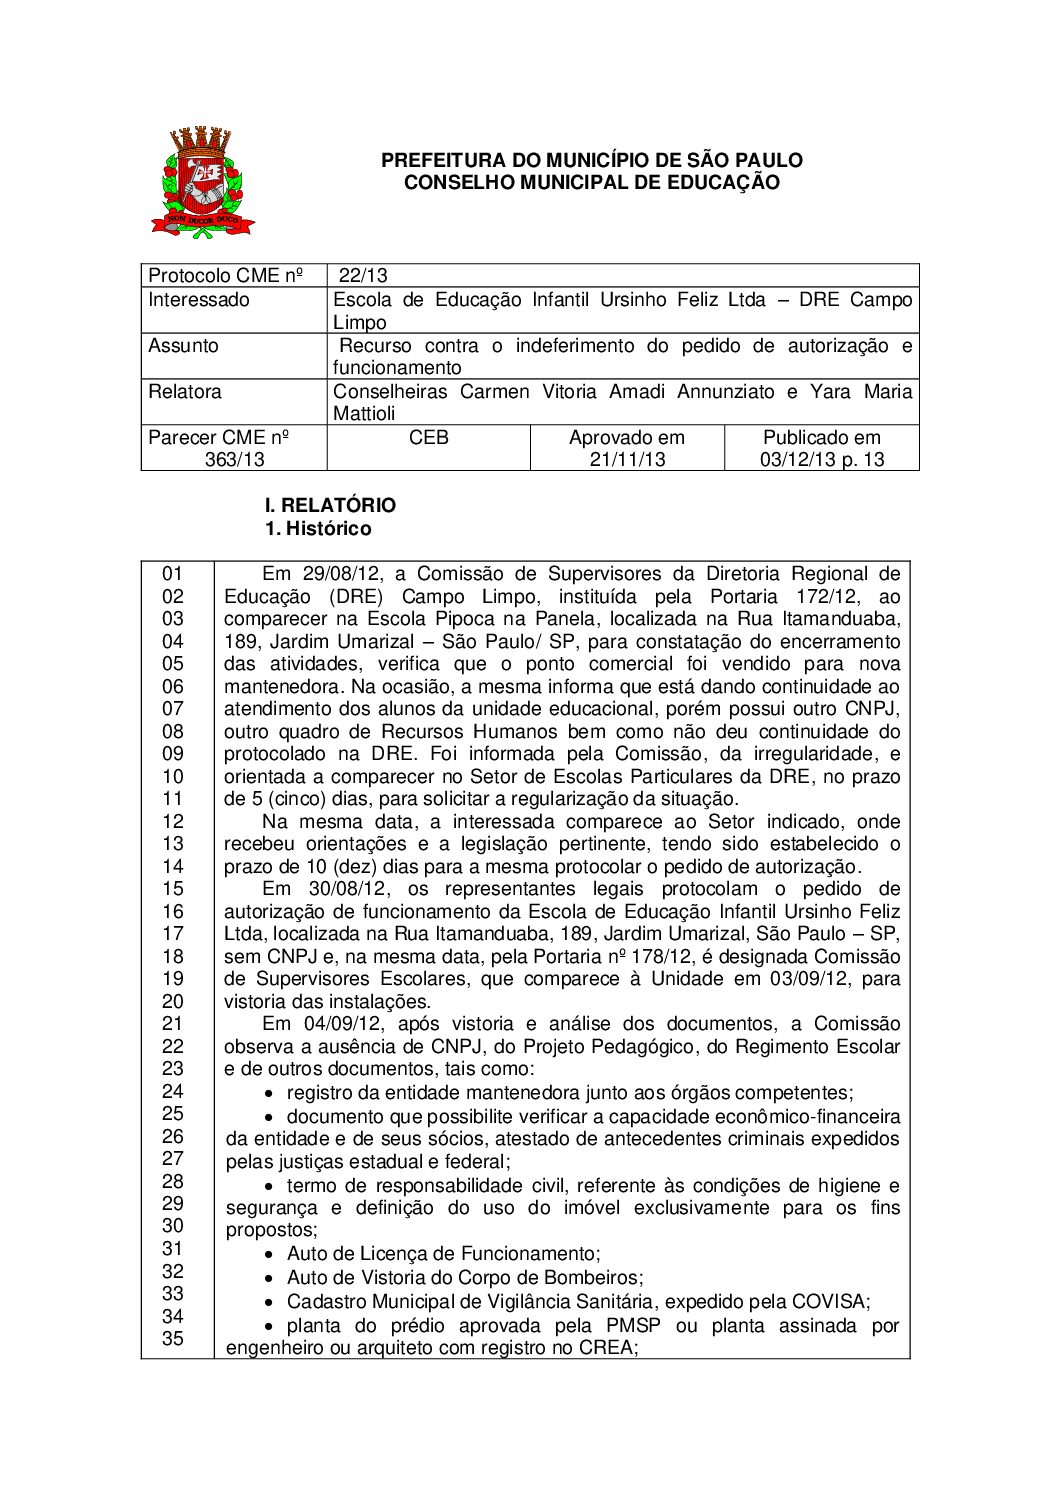 Parecer CME nº 363/2013 - Escola de Educação Infantil Ursinho Feliz Ltda (DRE Campo Limpo) - Recurso contra o indeferimento do pedido de autorização e funcionamento 